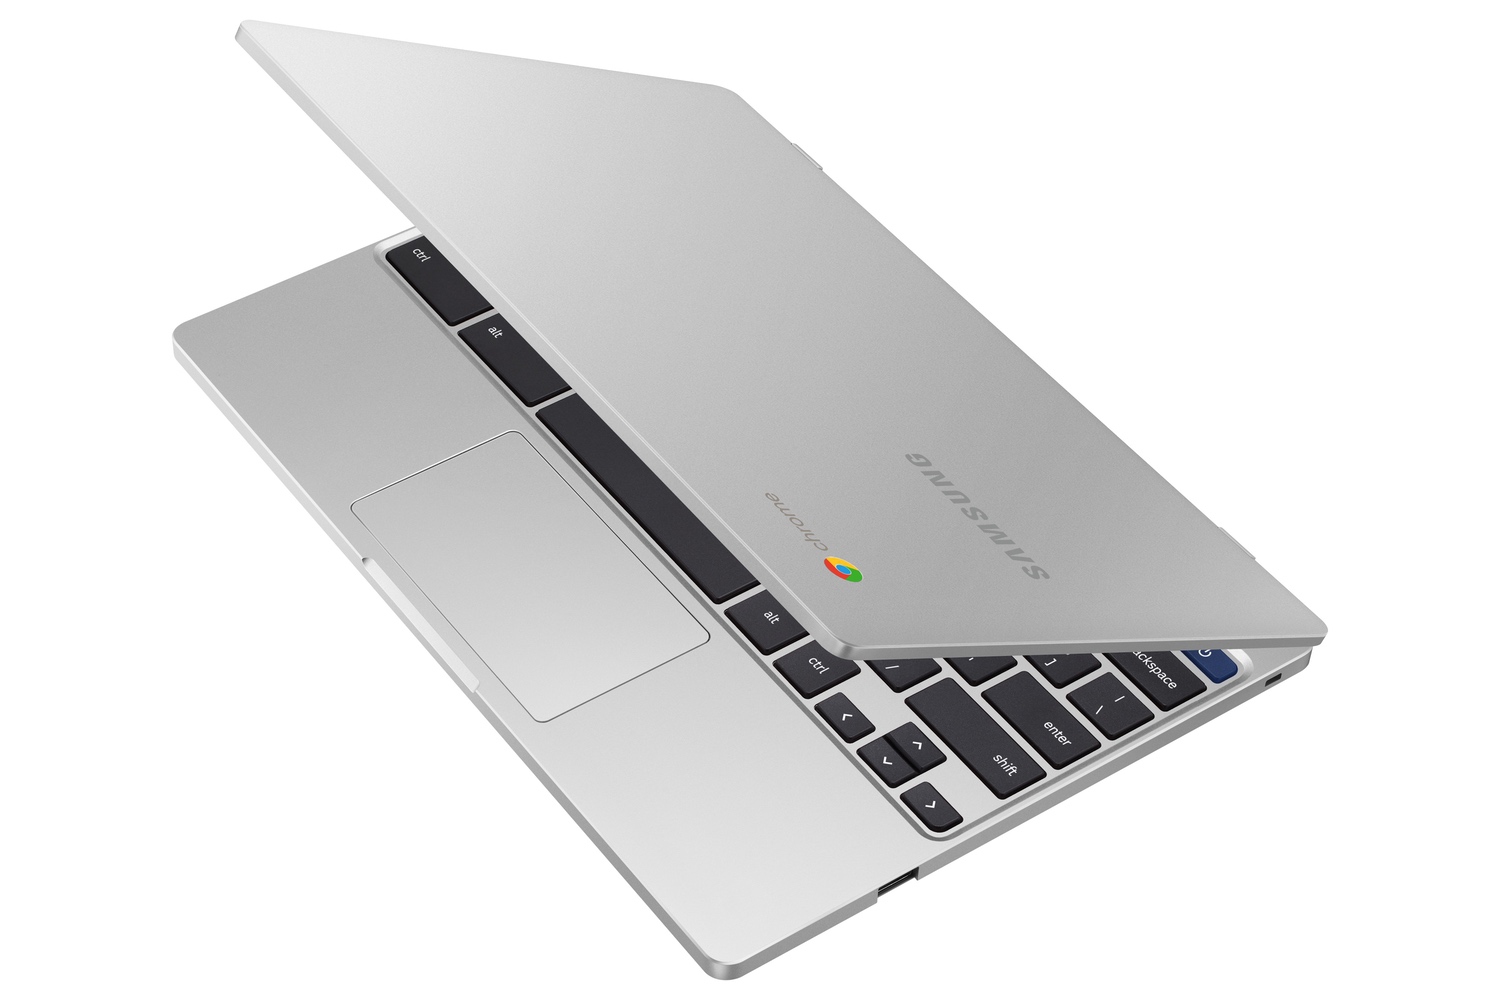 Samsung Chromebook 4 tem USB-C, bateria de até 12 horas e preço baixo